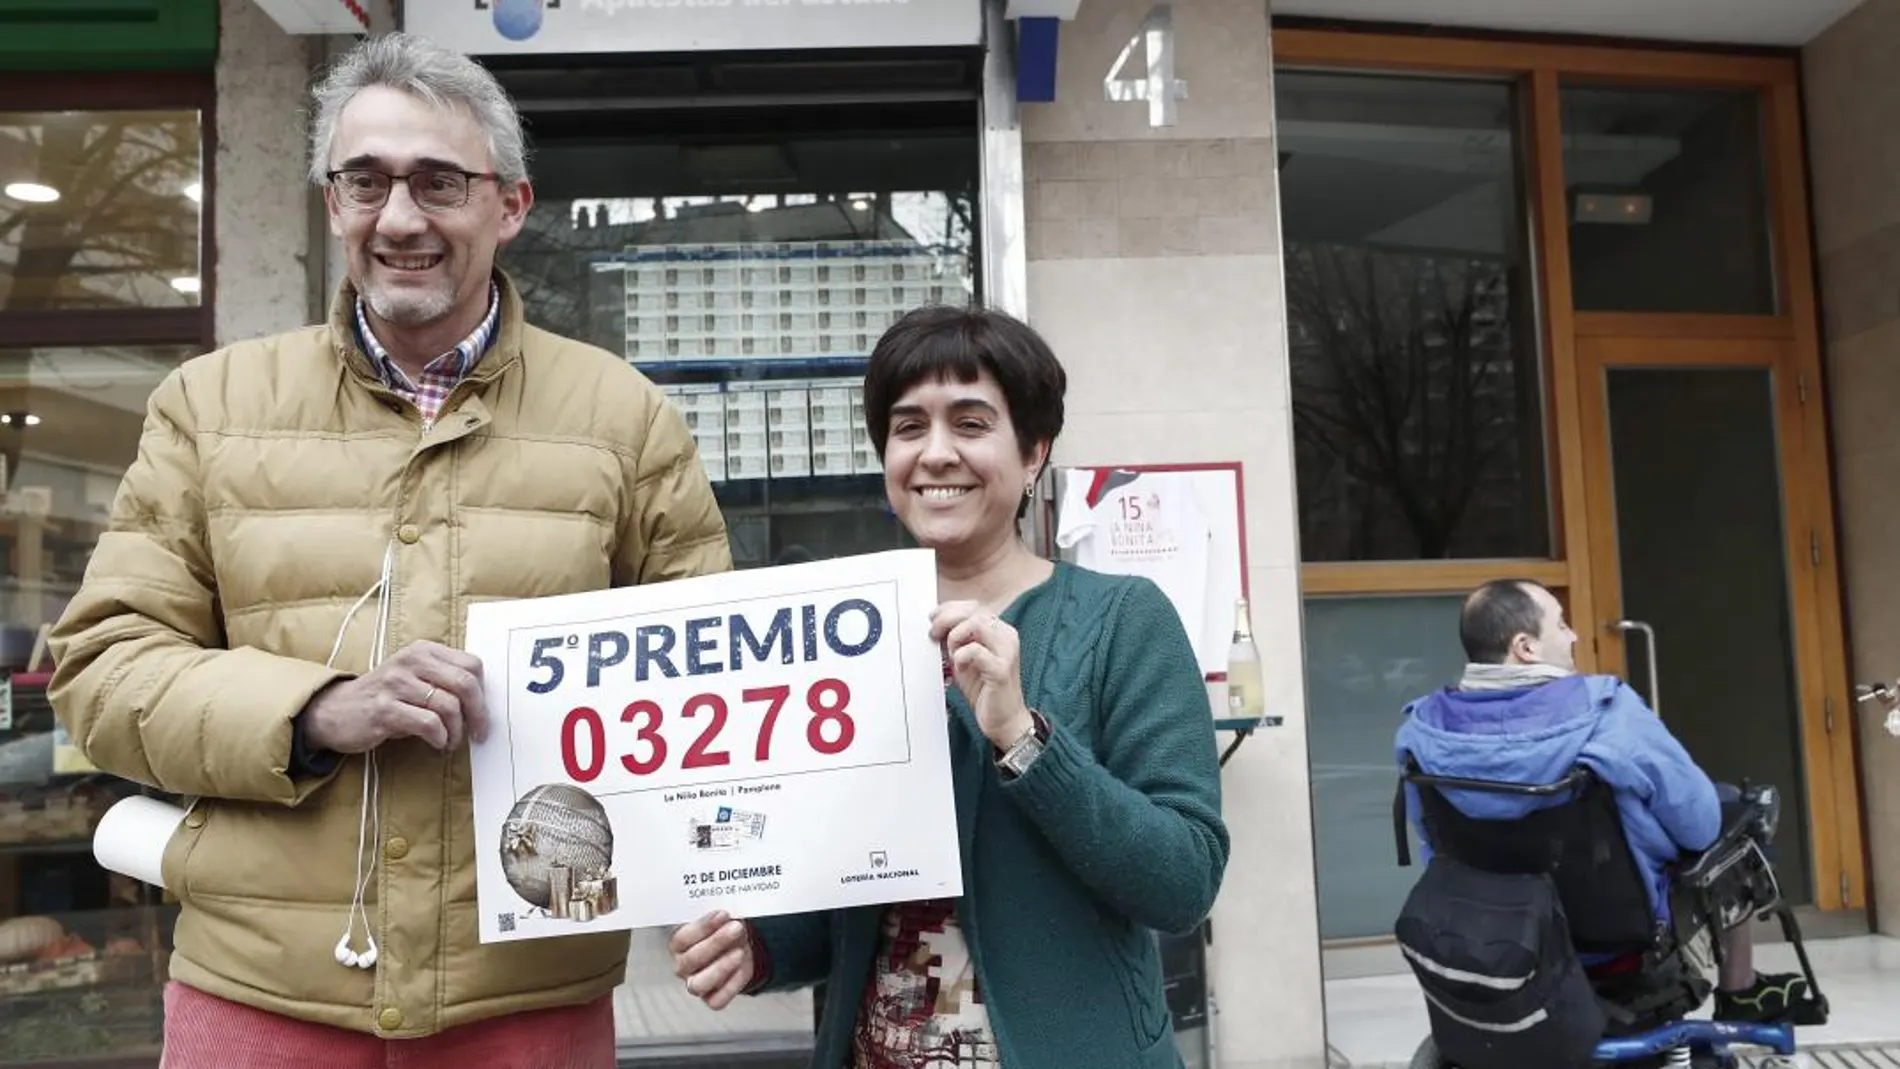 La administración número 15 de Pamplona ubicada en el número 4 de la calle Fuente del Hierro ha repartido 900.000 euros de un quinto premio, el 03.278